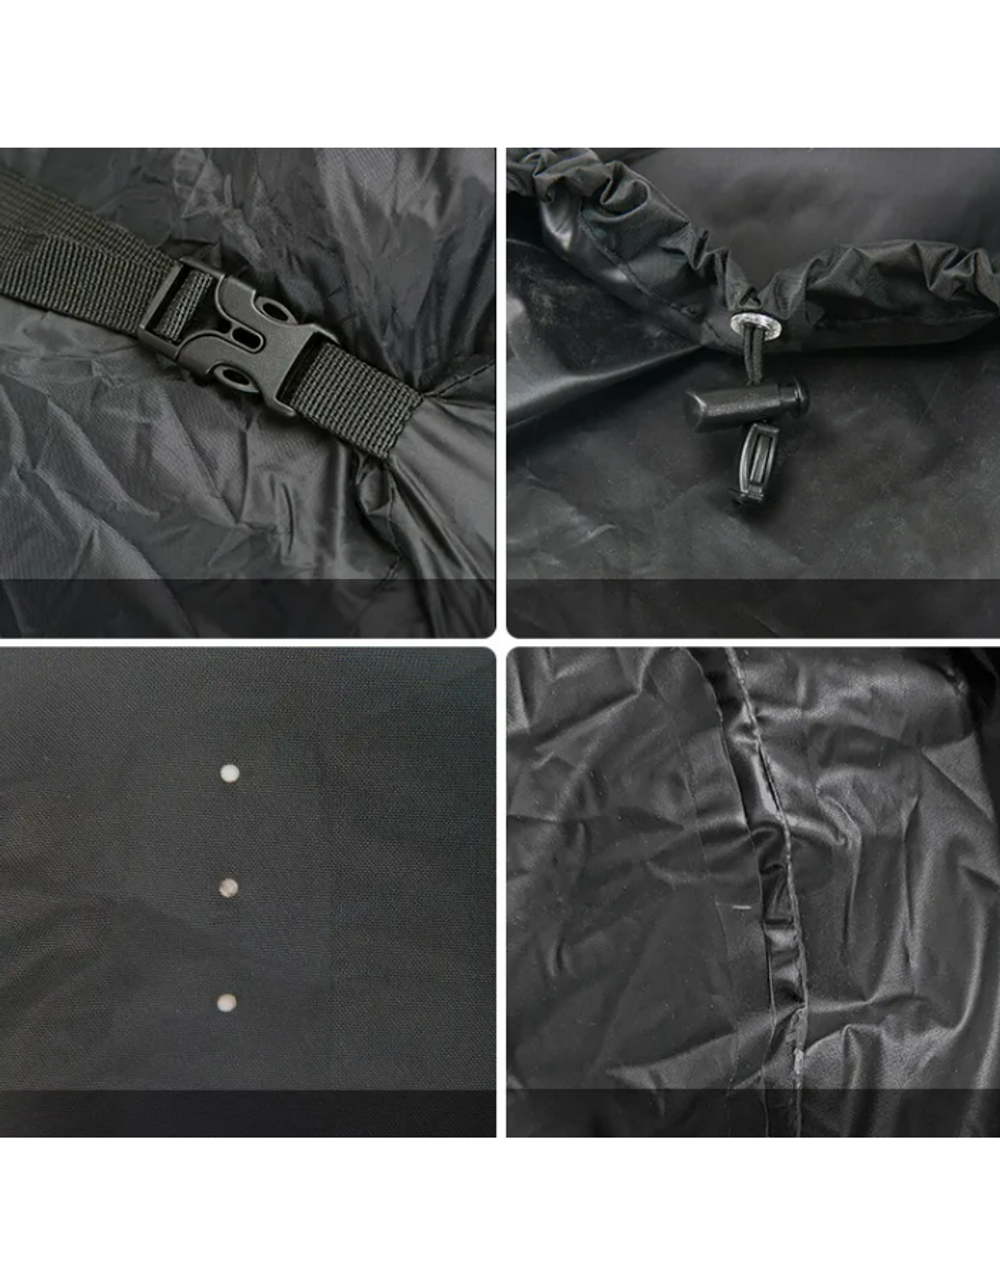 Чехол влагозащитный Naturehike, для рюкзака, размер M (35-45 л), черный